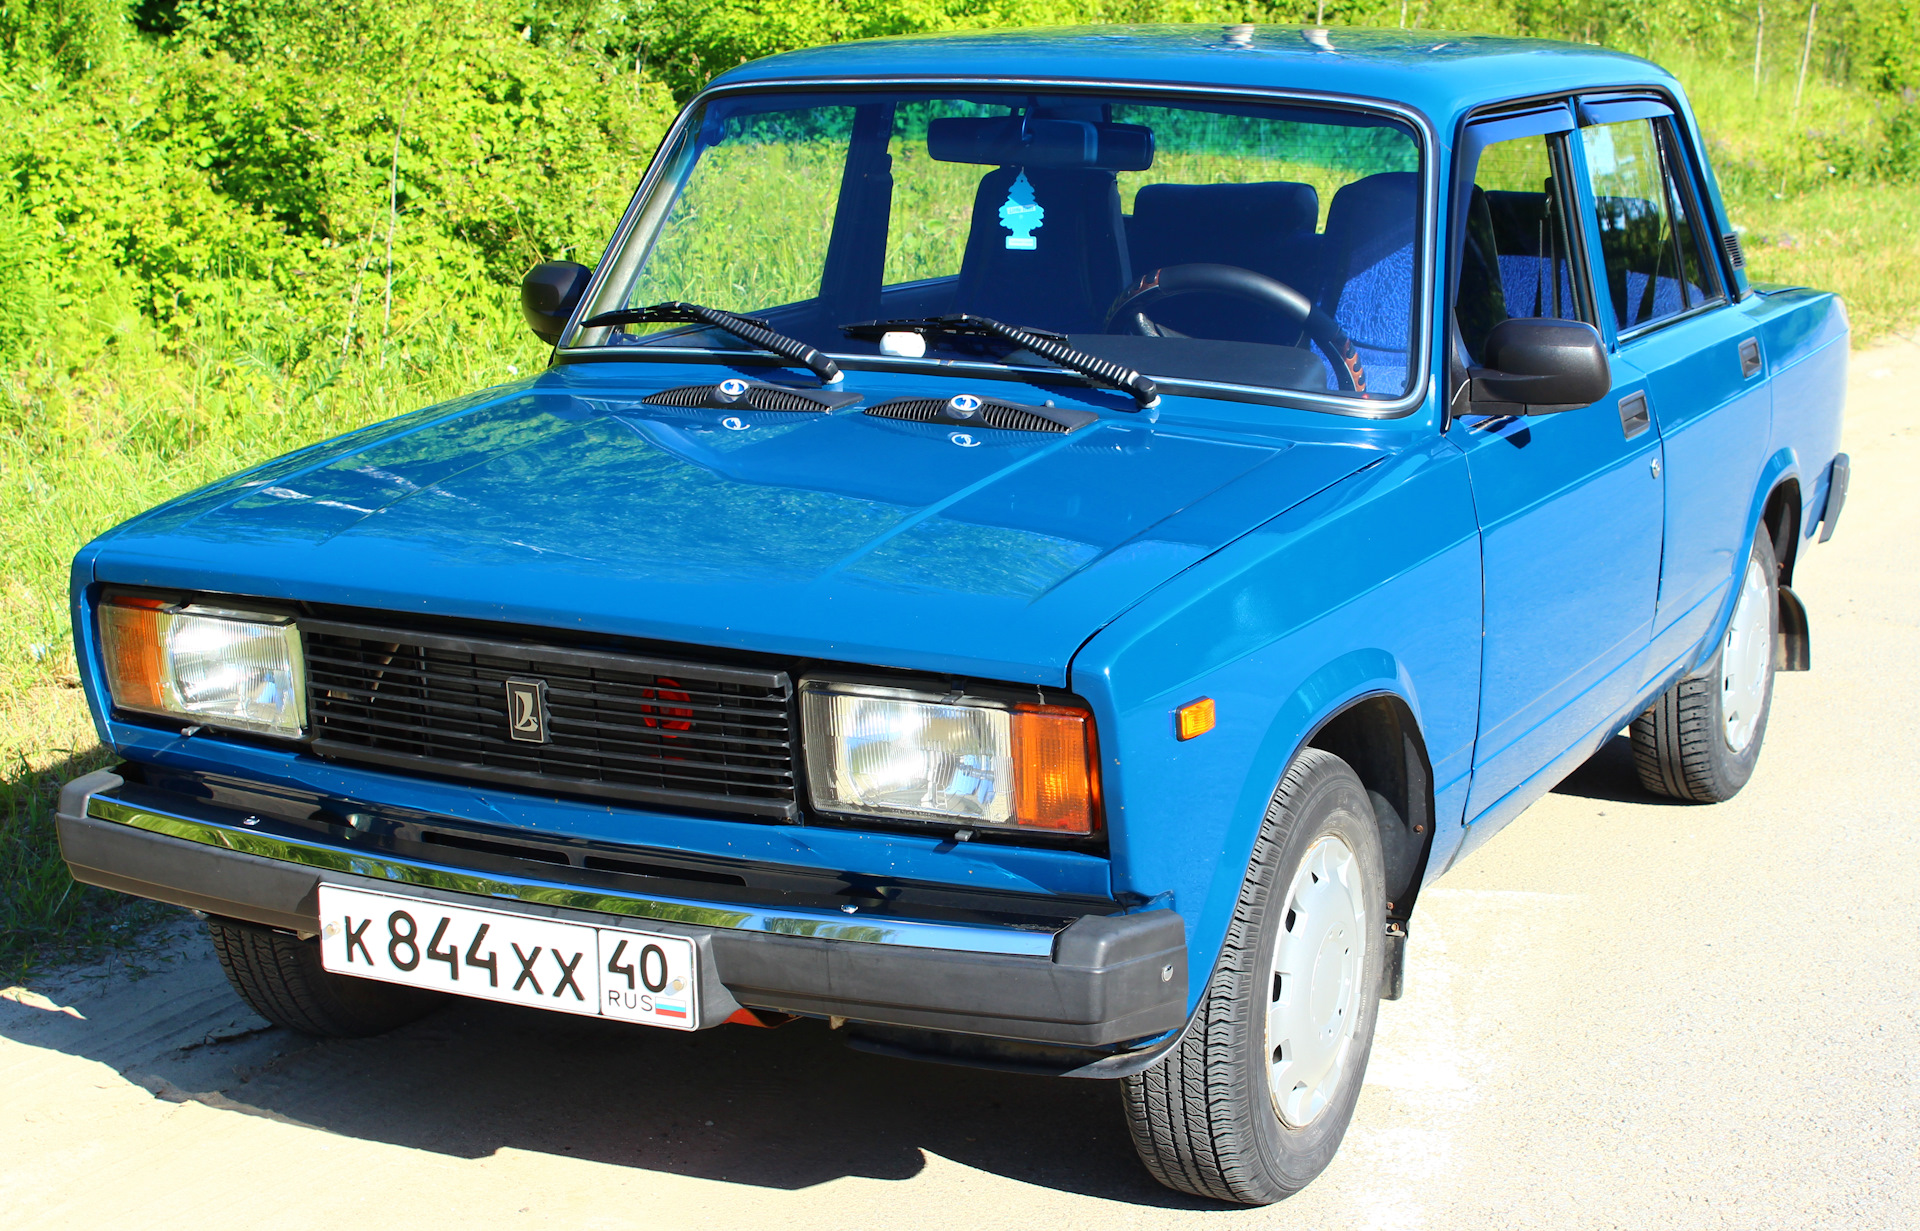 Продажа автомобиля жигули. ВАЗ-2105 «Жигули». ВАЗ-2105 Жигули синий. ВАЗ 2105 голубая.